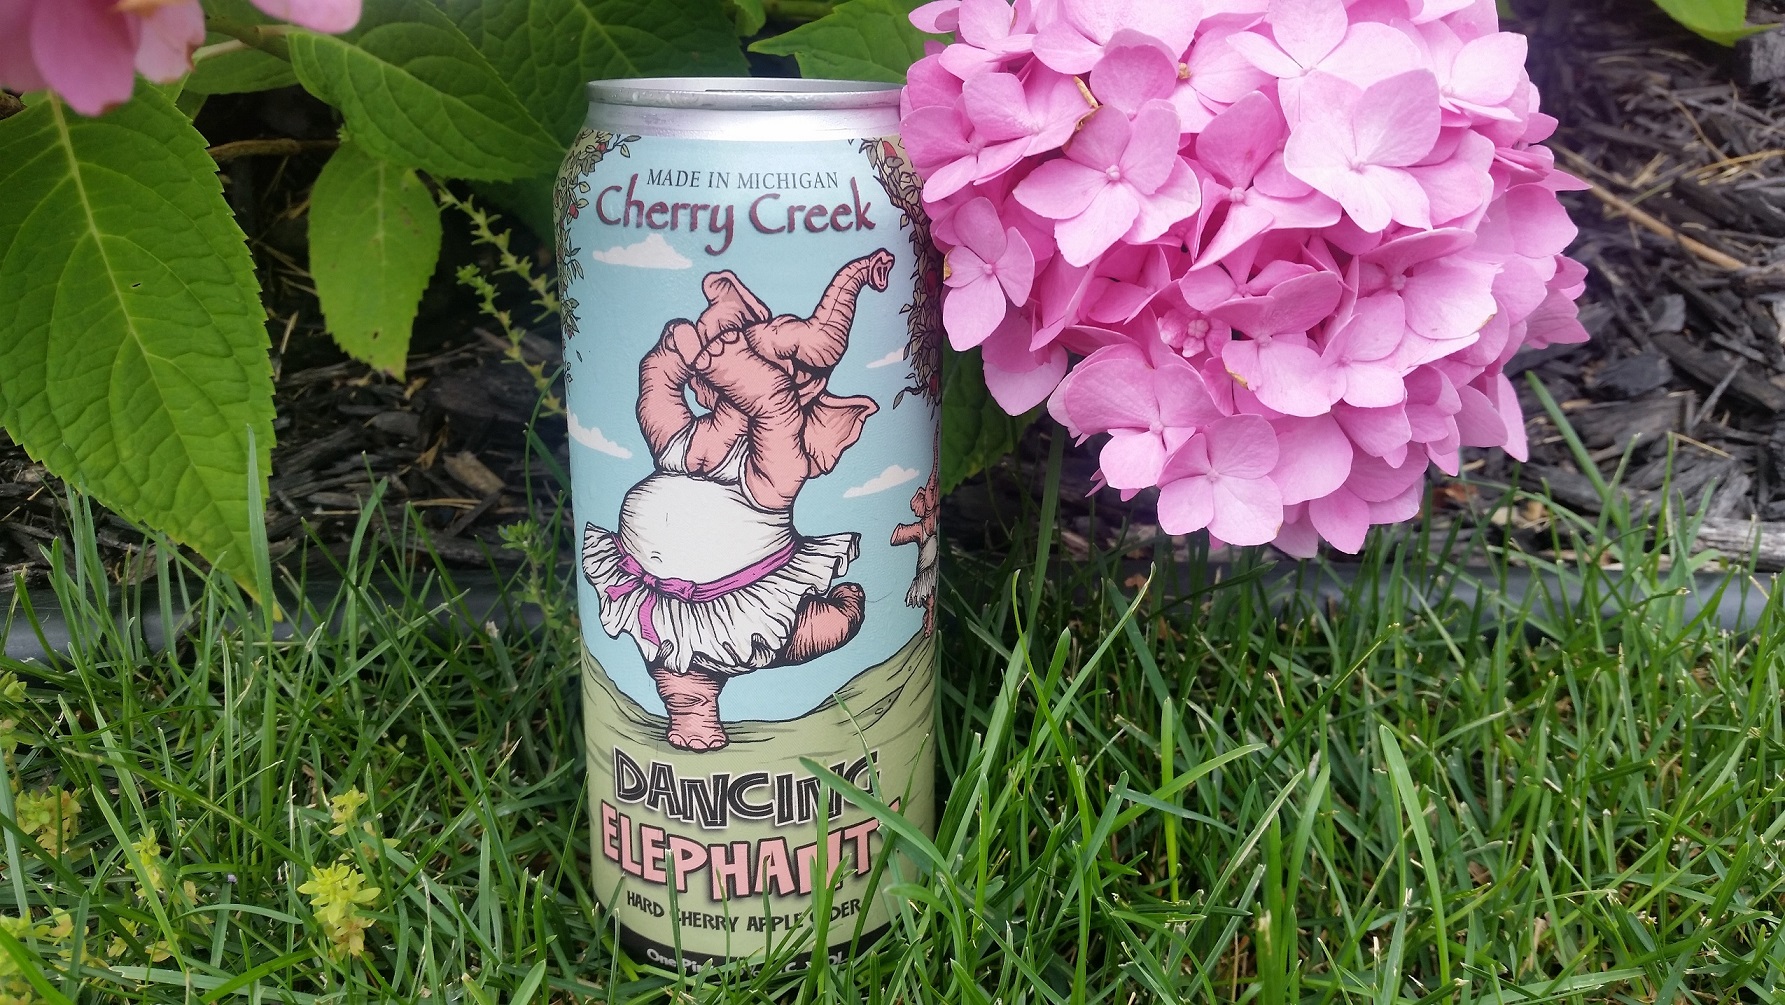 Cherry Creek Winery | Dancing Elephants